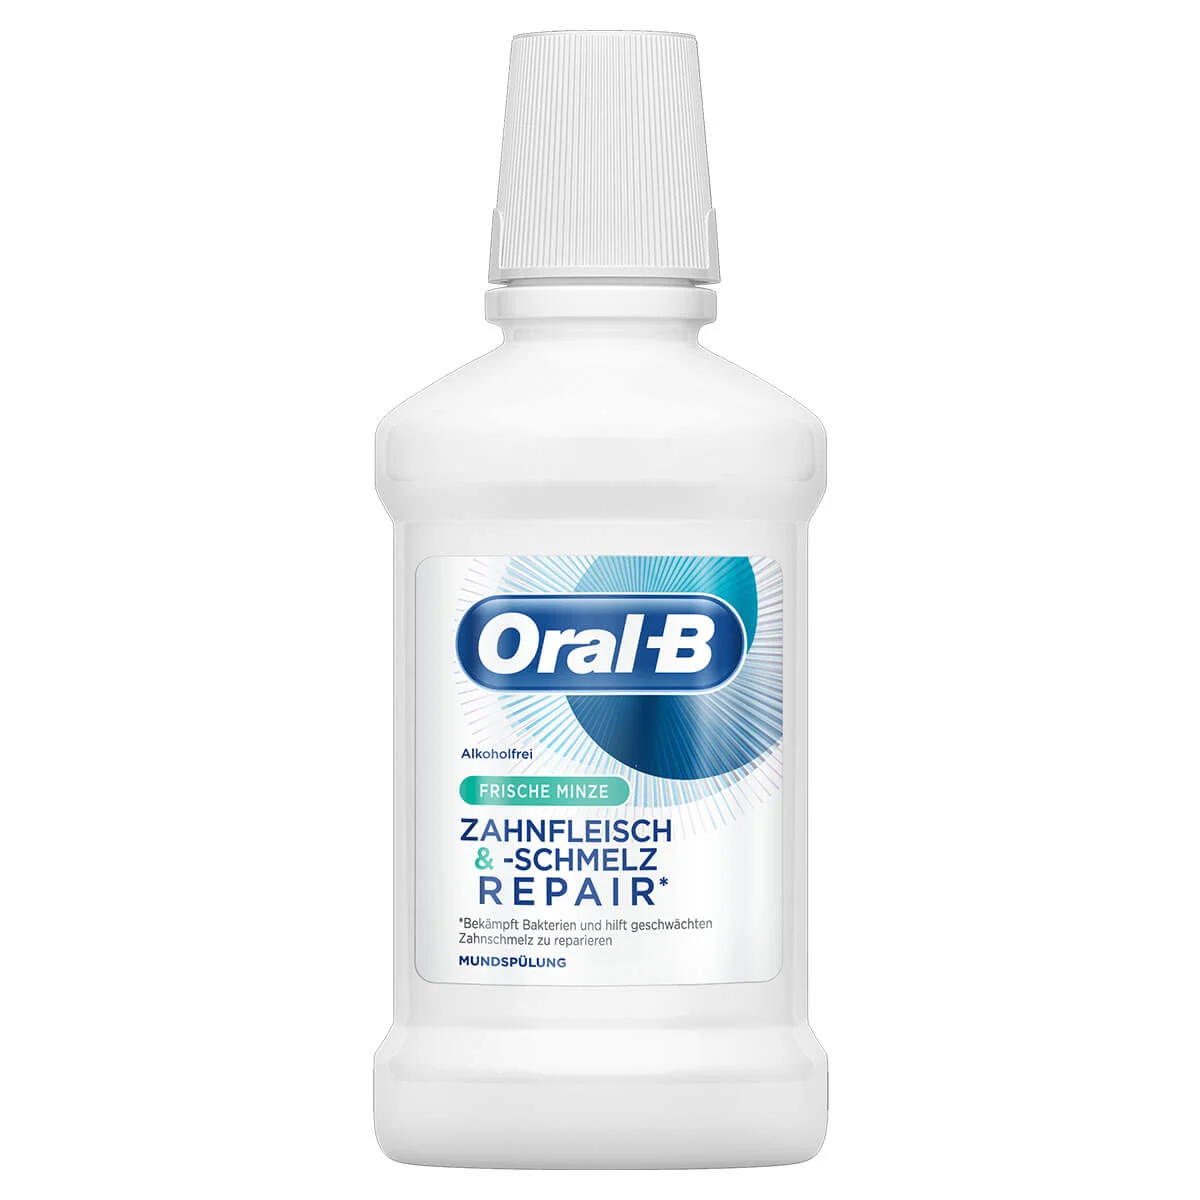 Oral-B Zahnfleisch & -schmelz Mundspülung Frische Minze 250 ml 